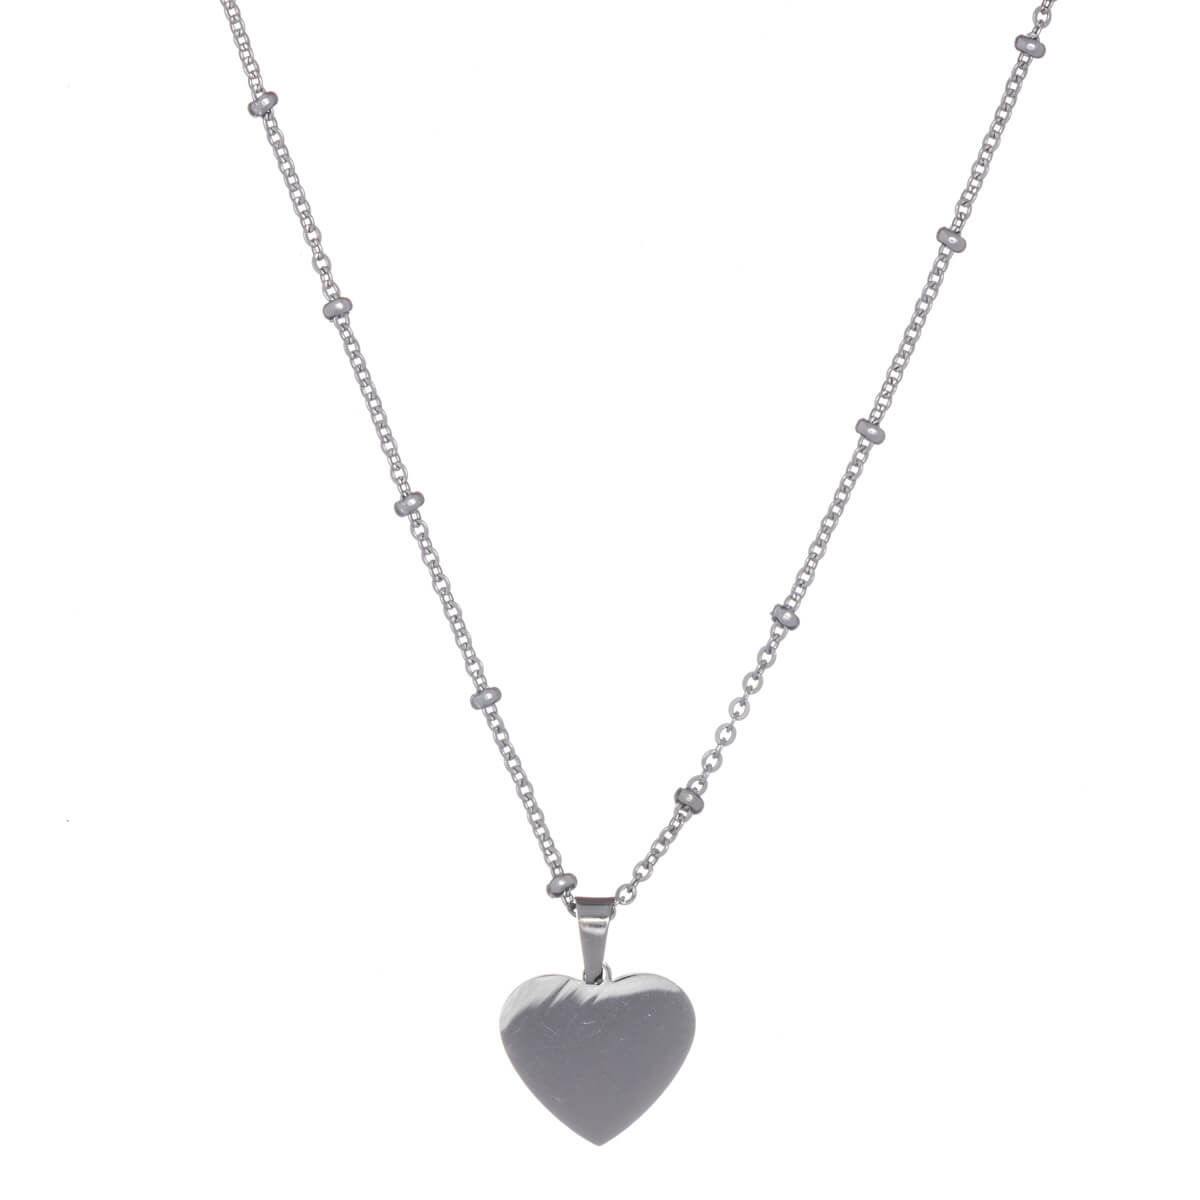 Heart pendant necklace 43cm (steel 316L)